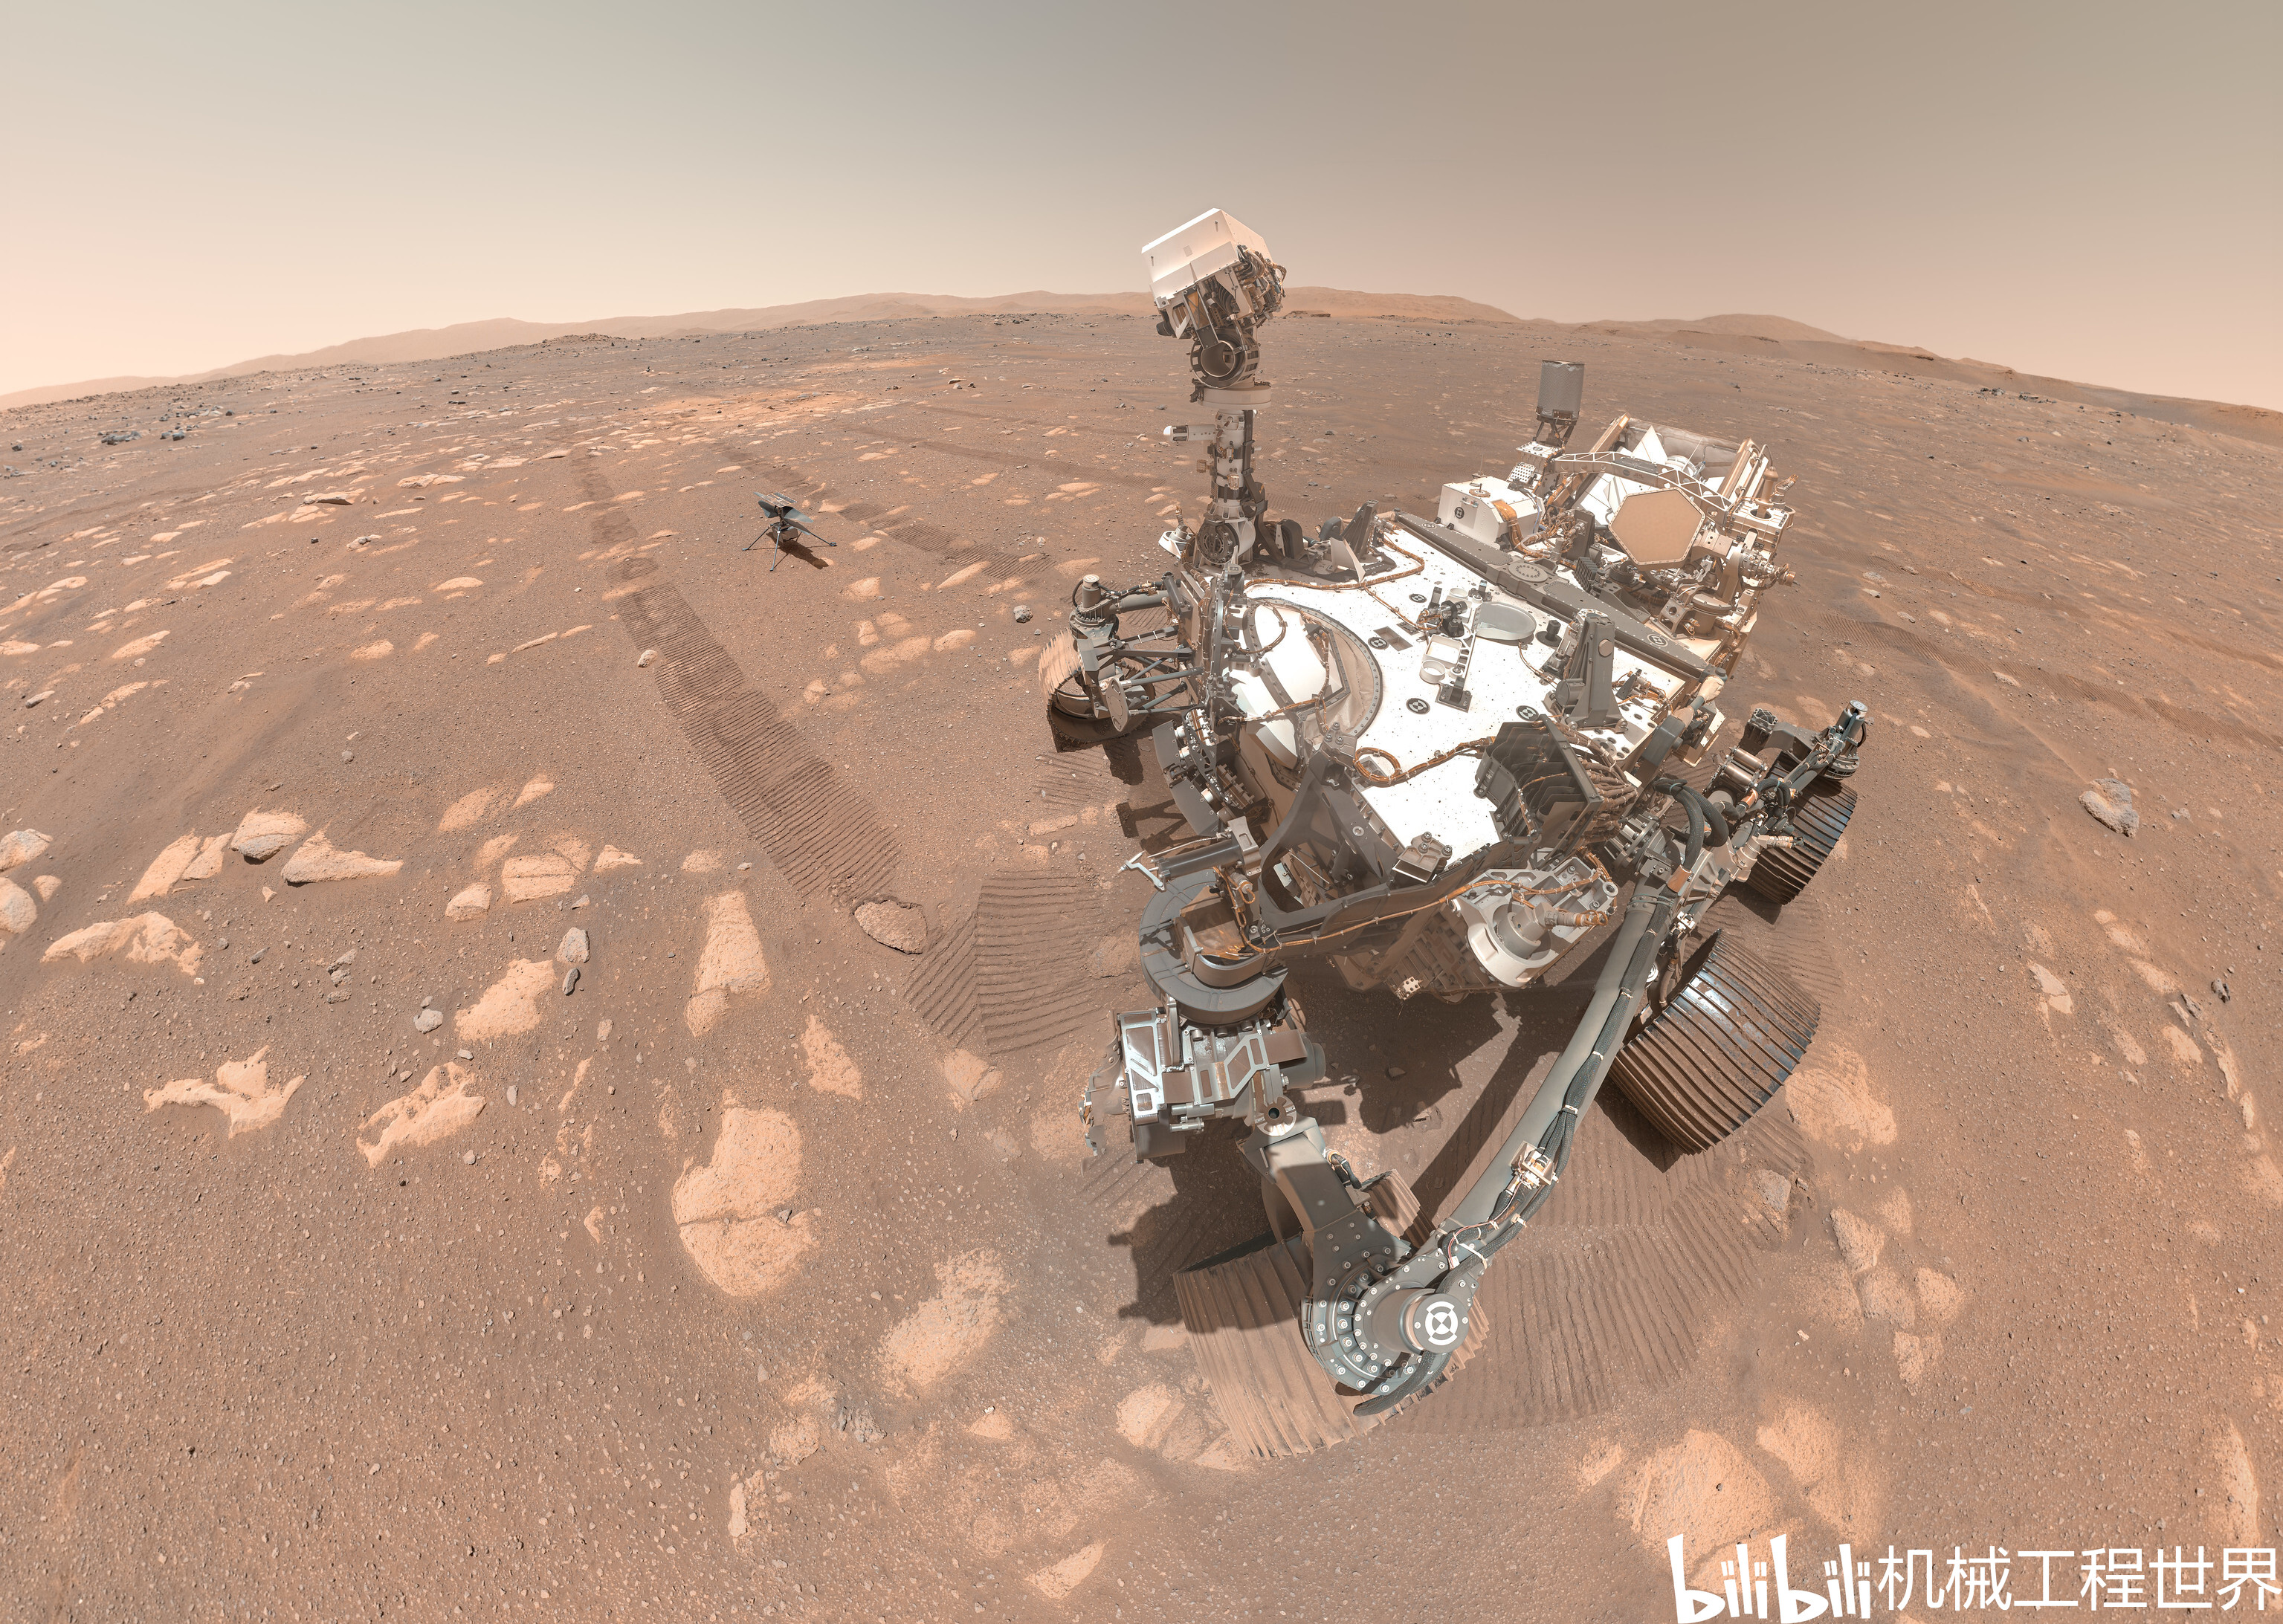 毅力号火星车和火星无人机(ingenuity)的合照相片(最后一张图片有彩蛋